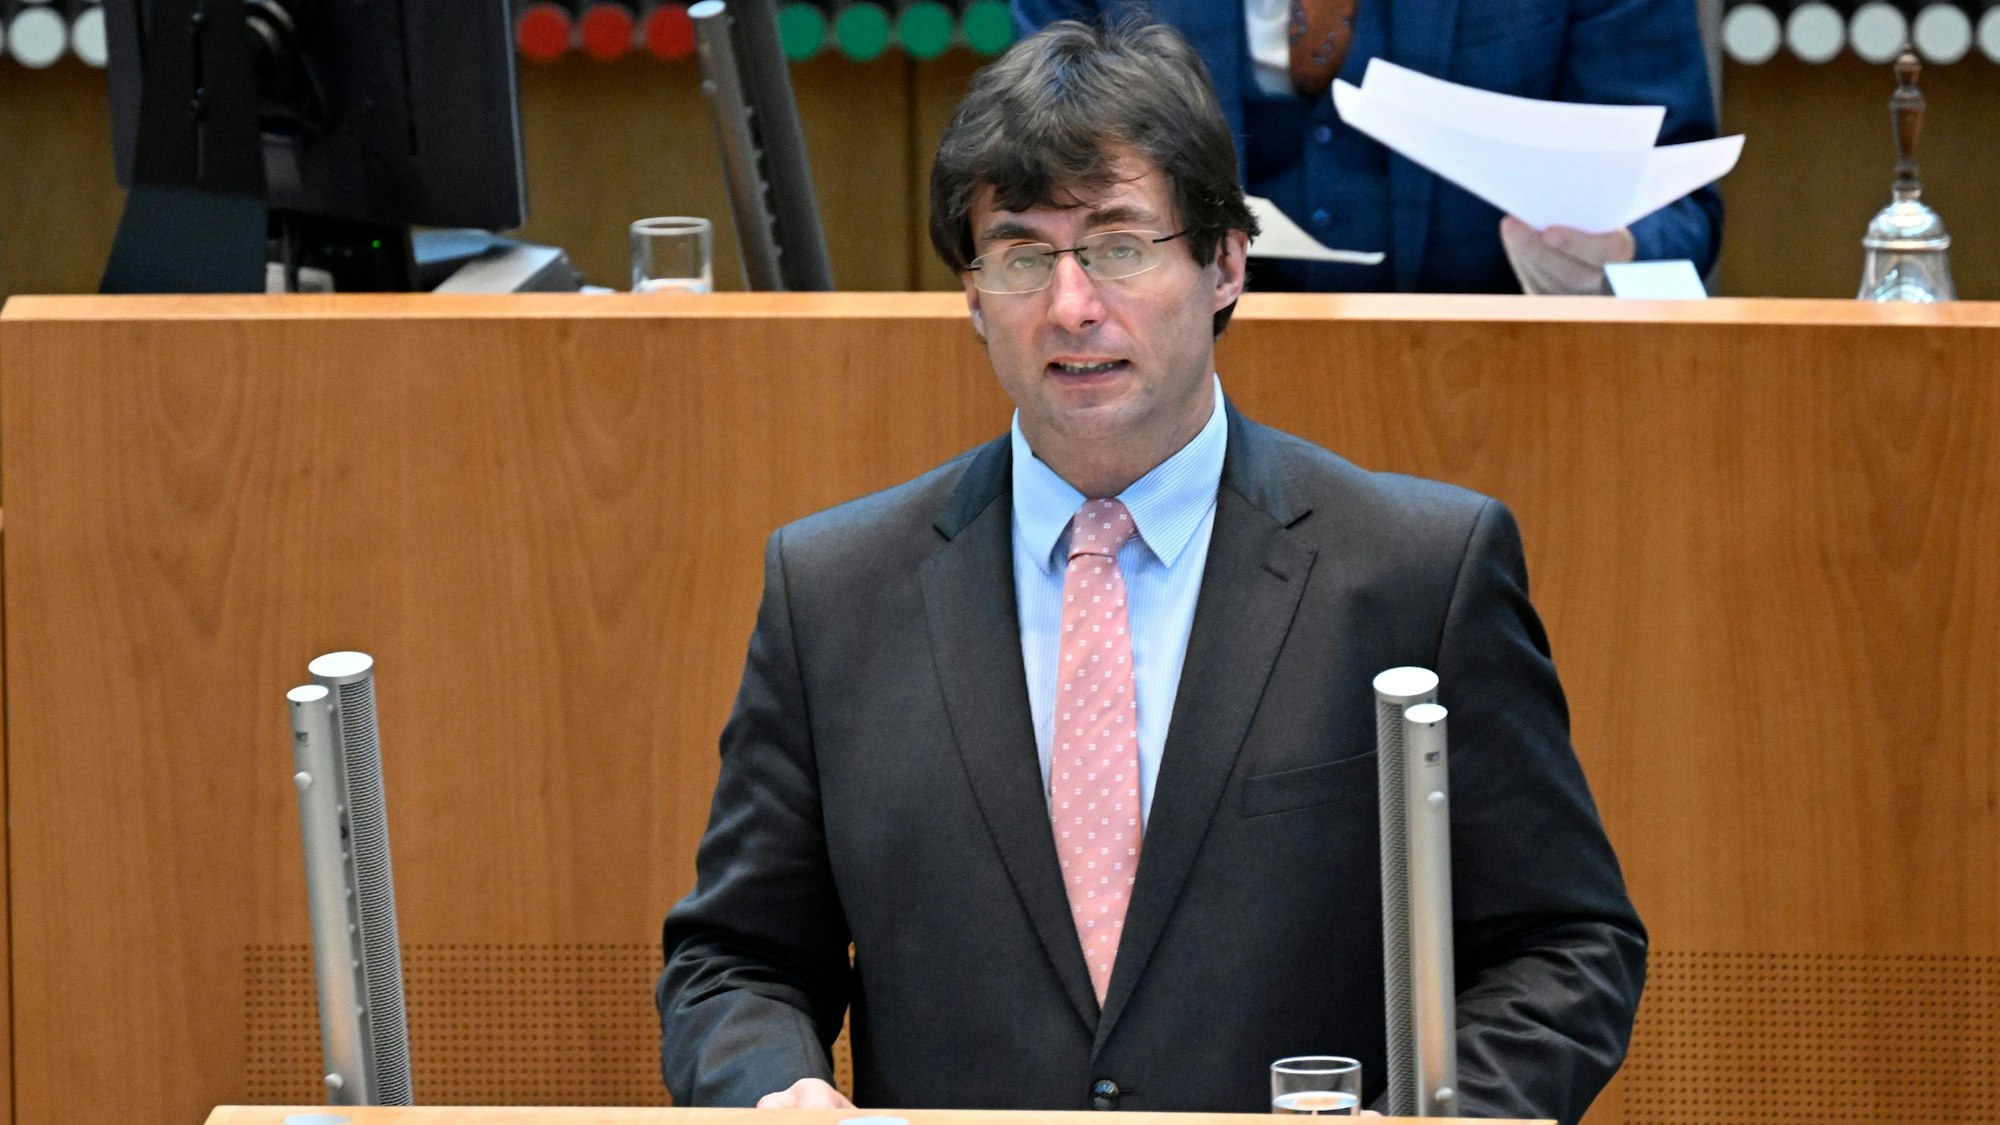 03.11.2022, Nordrhein-Westfalen, Düsseldorf: Marcus Optendrenk (CDU), Finanzminister in Nordrhein-Westfalen, spricht während der Haushaltsdebatte im Plenum des Landtages.